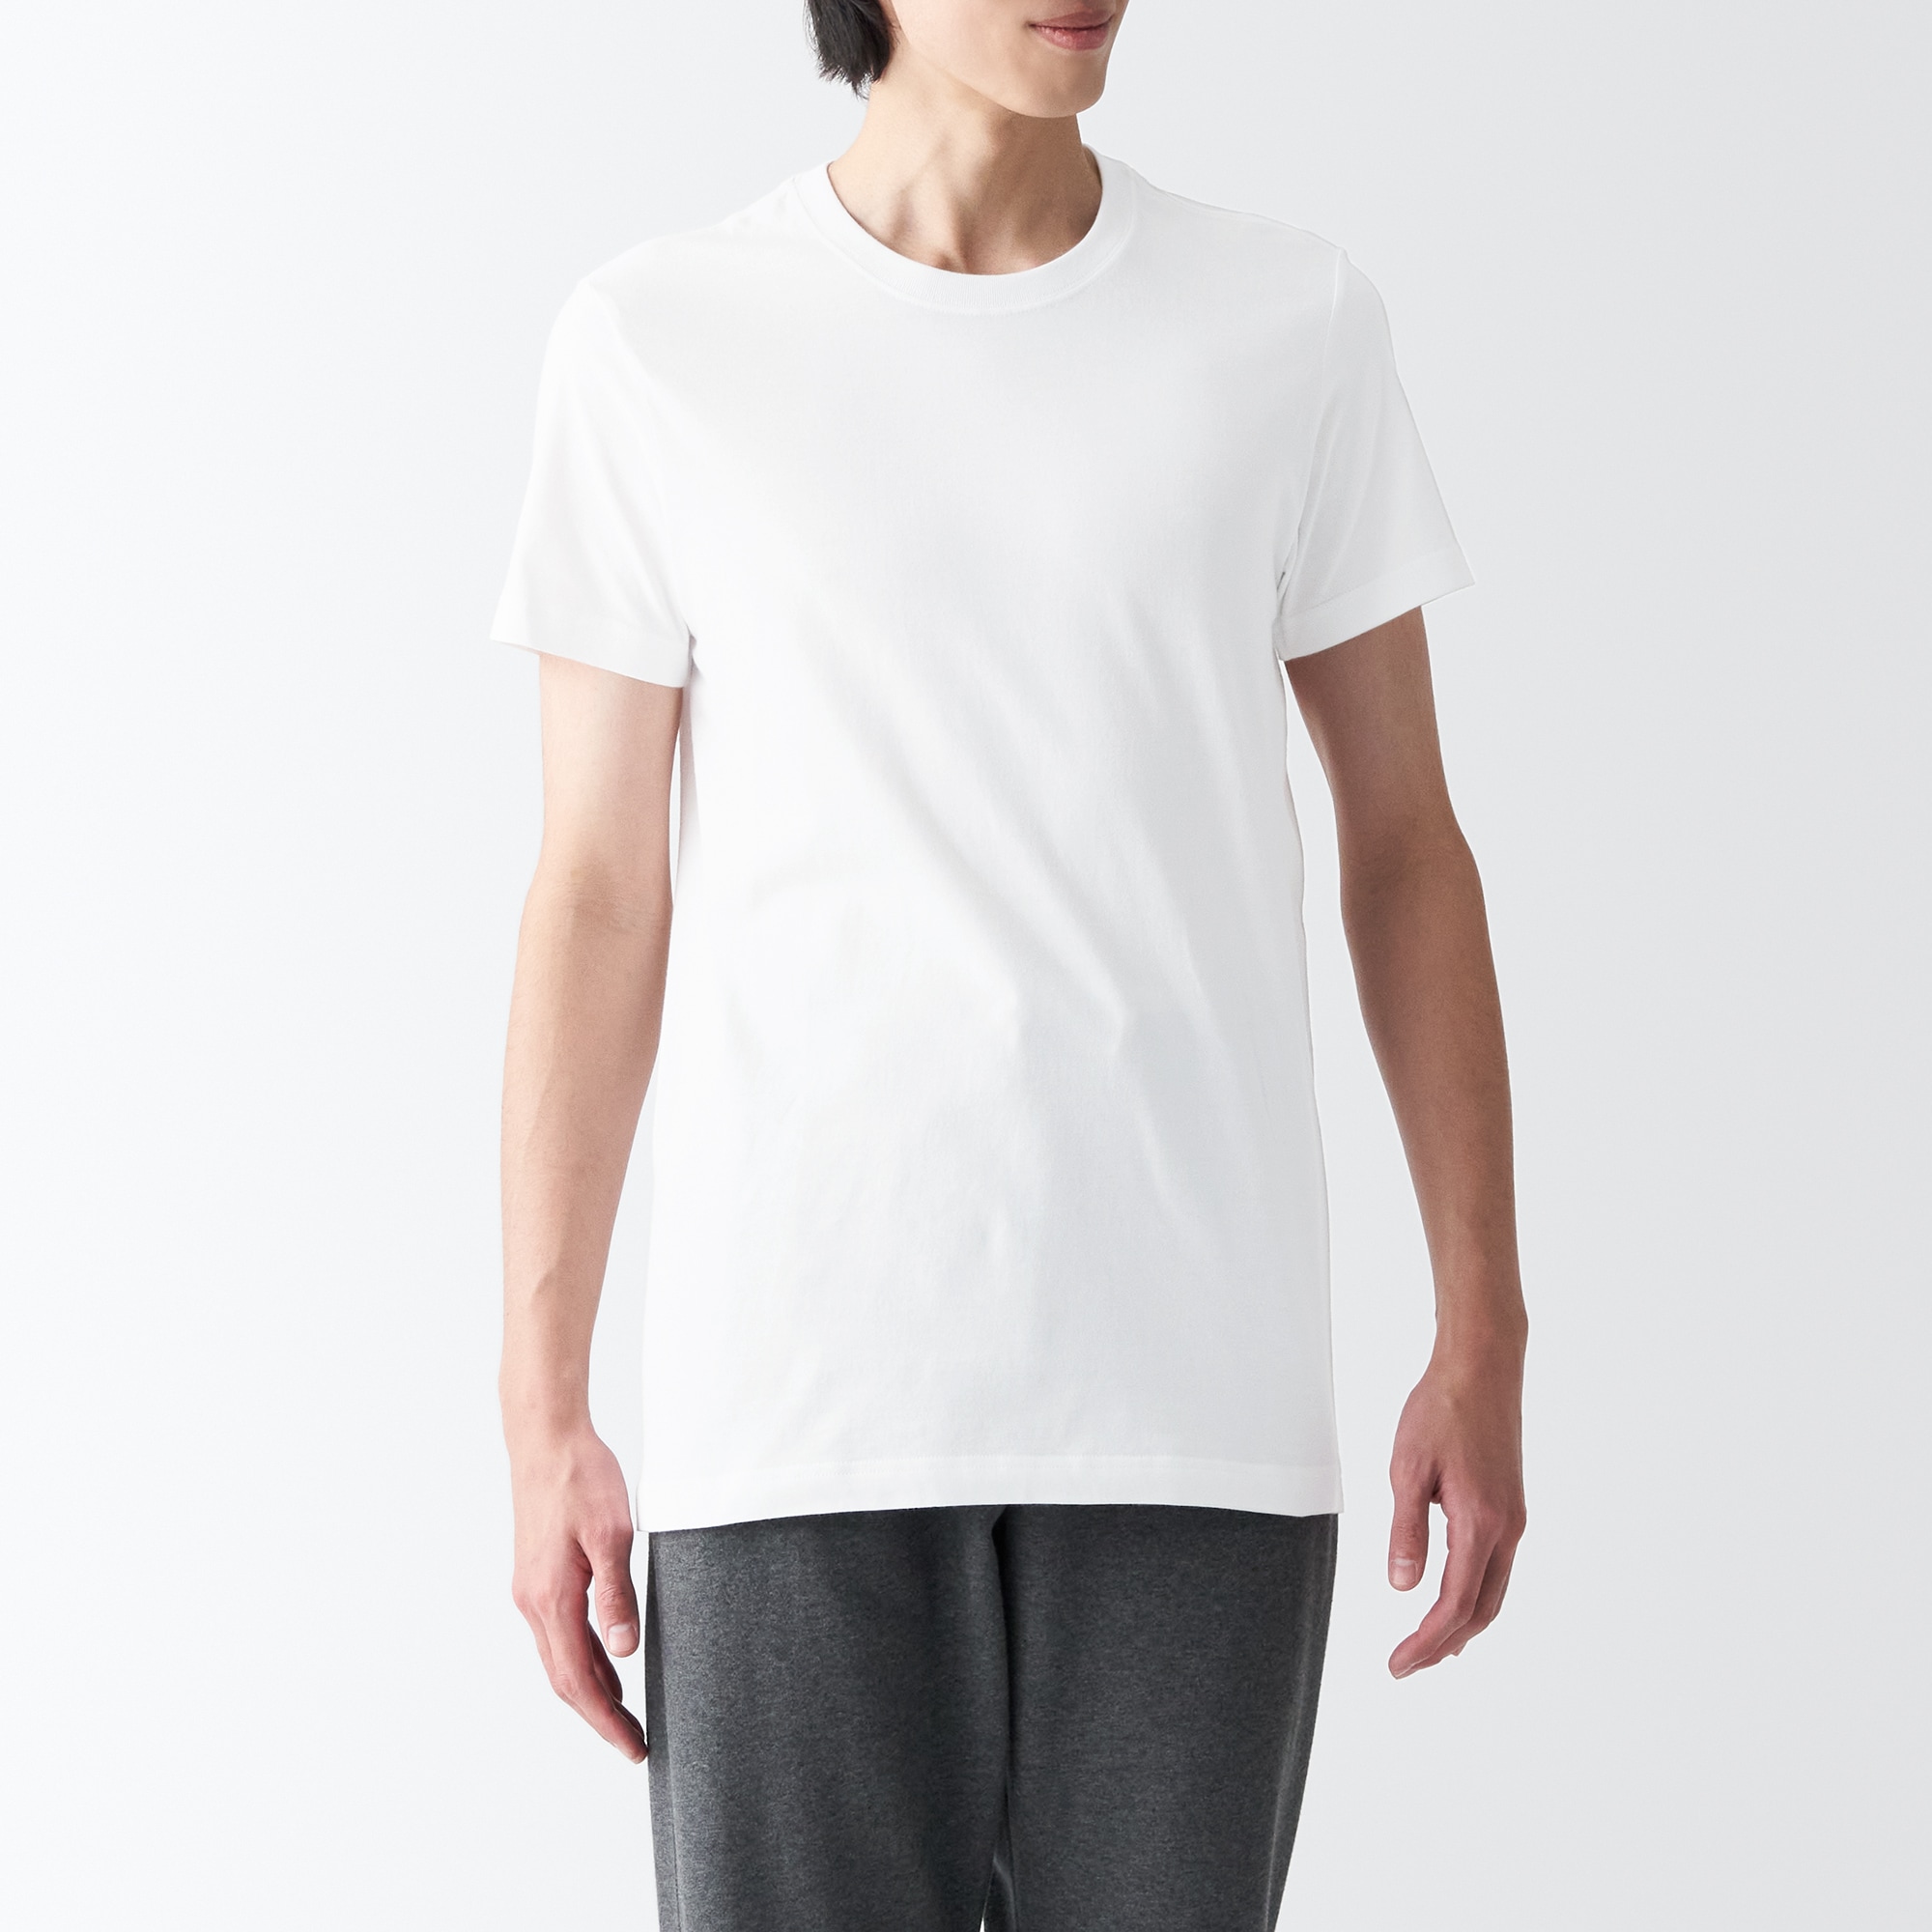 무인양품 일본 겨드랑이 솔기없는 저지 크루넥 반팔 티셔츠